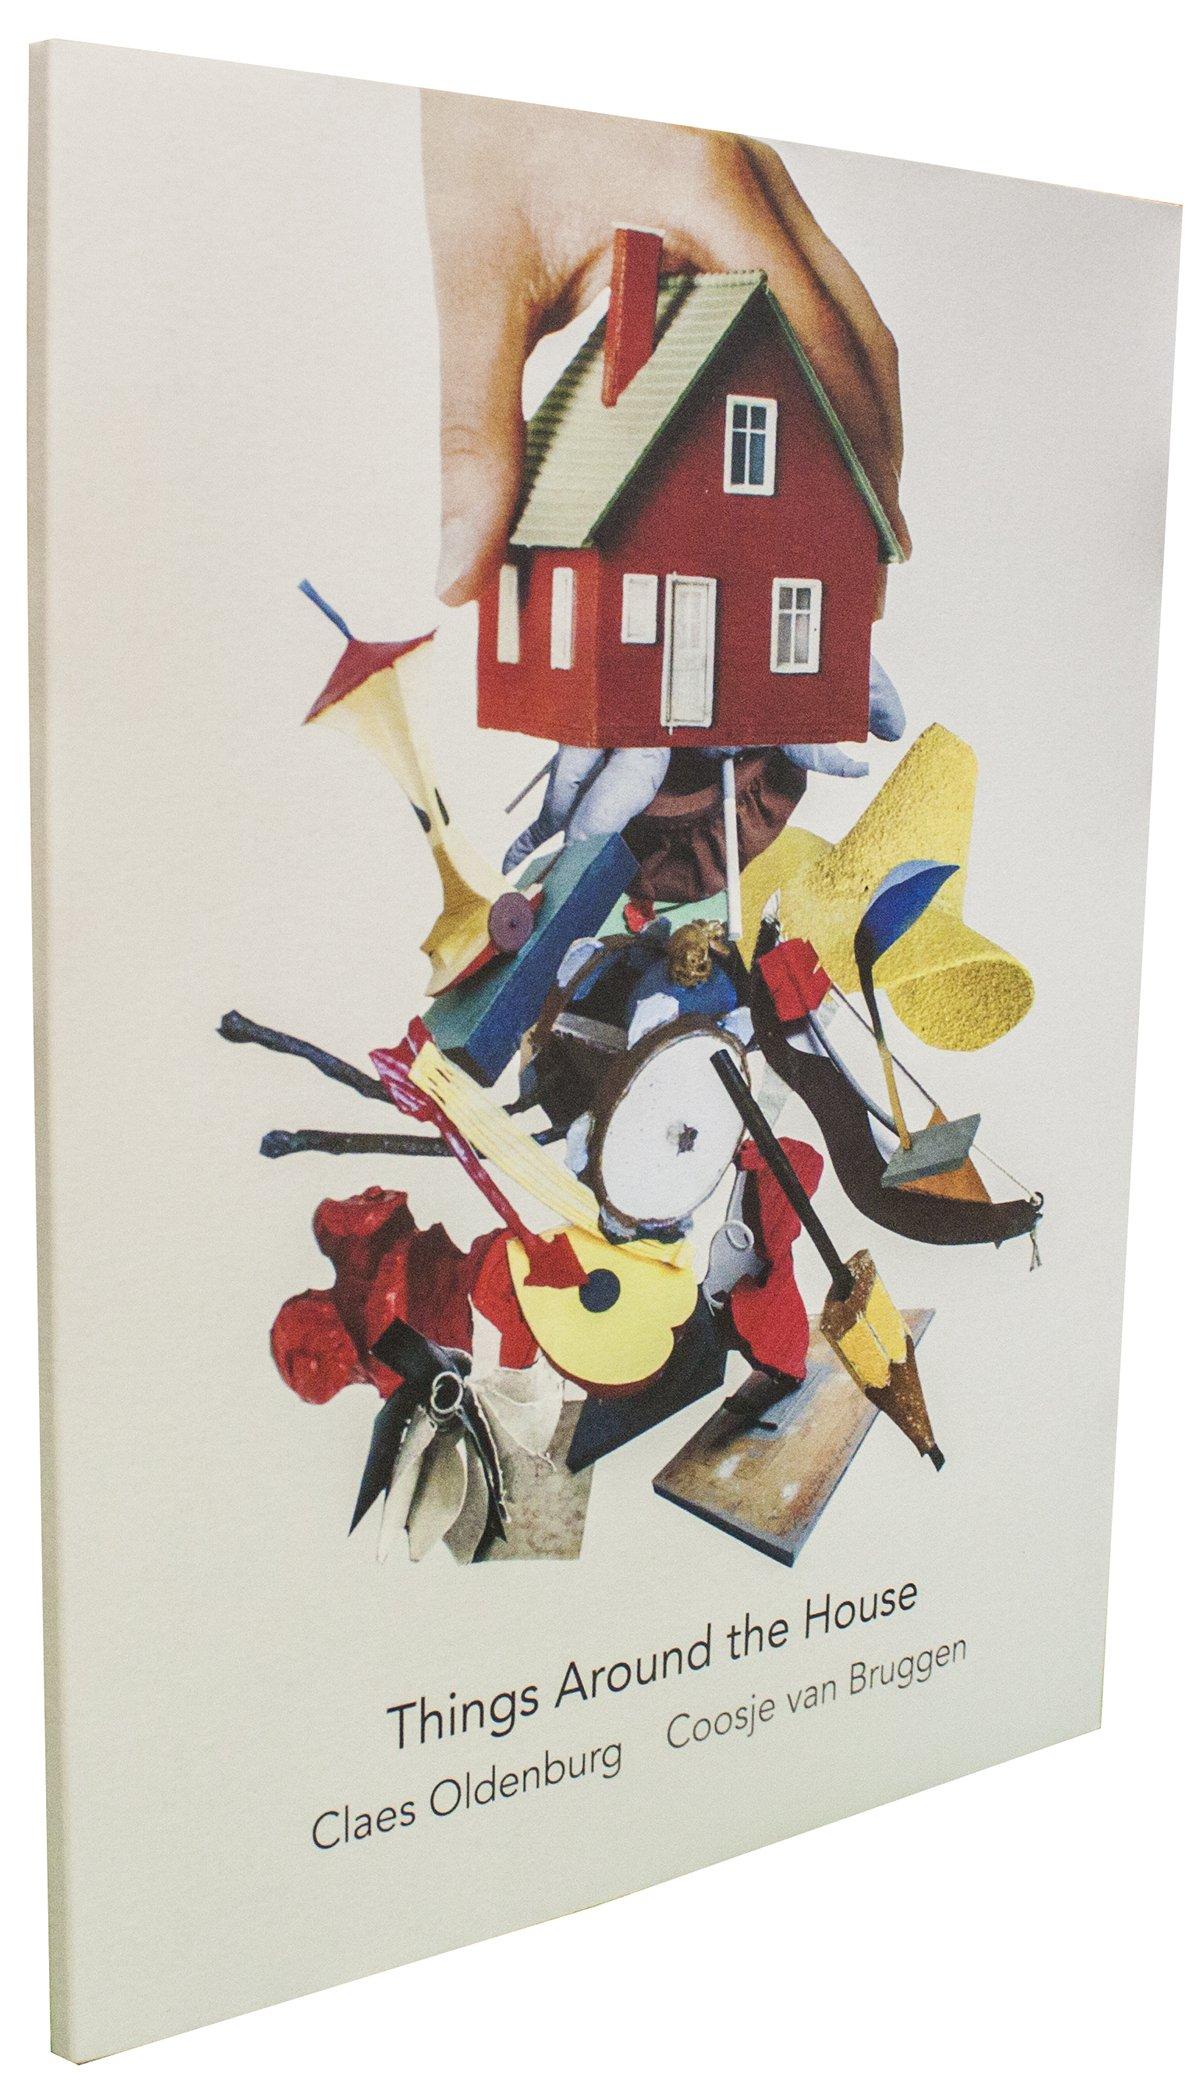 Livre blanc "Things Around the House" de Claes Oldenburg, 2015 - Print de Unknown